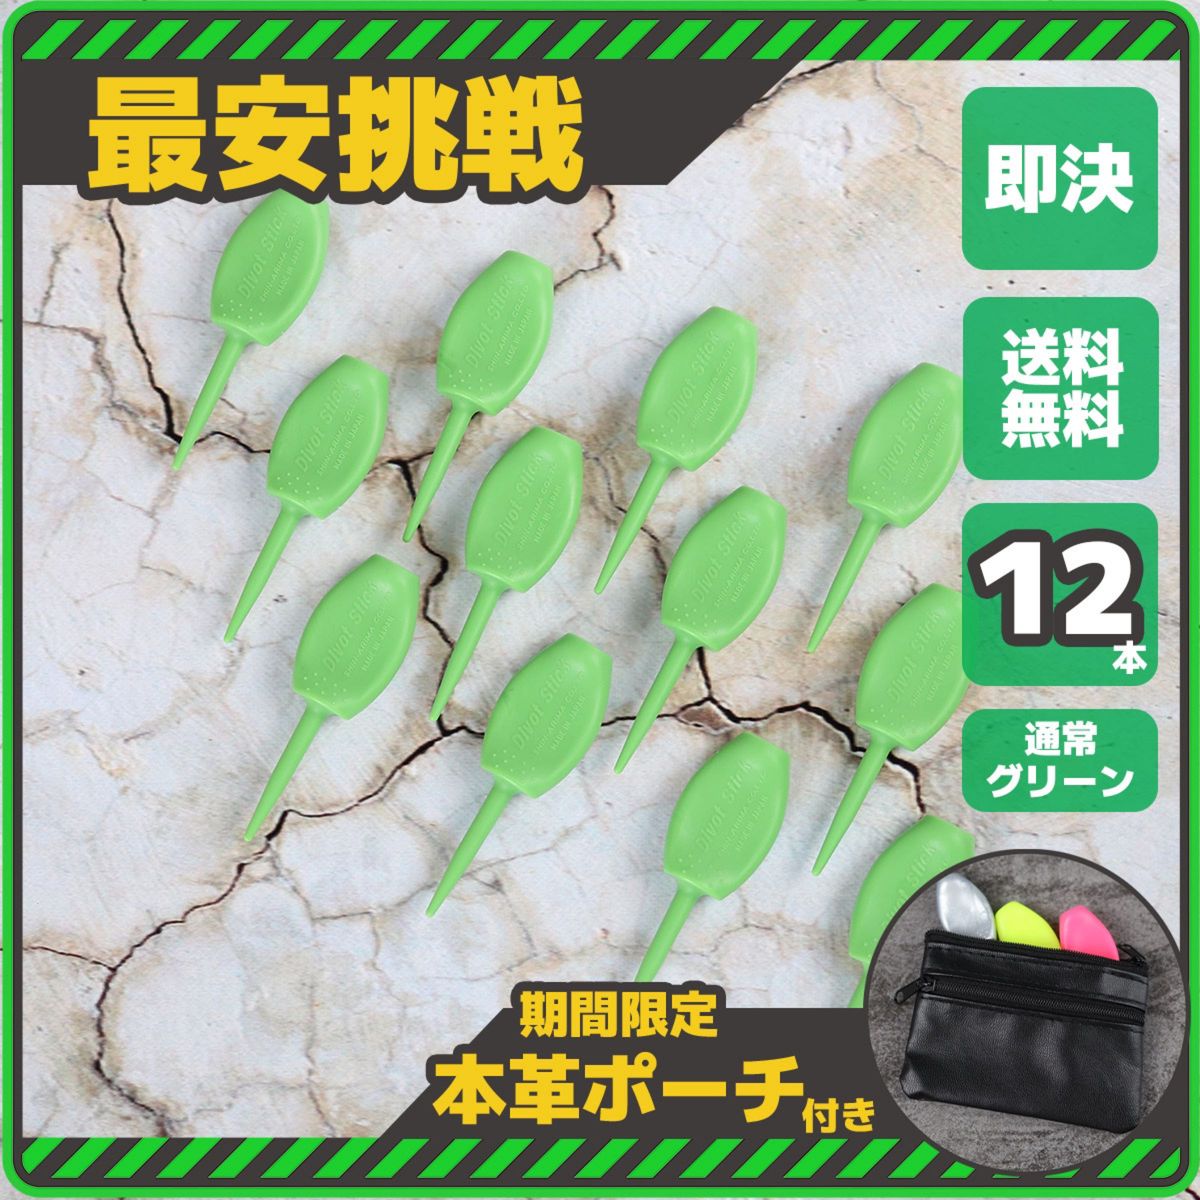 12本 日本製 パリティー 通常色 グリーン 緑色 ゴルフボール 跡 ゴルフティー ティーペグ グリーンフォーク b098Tg